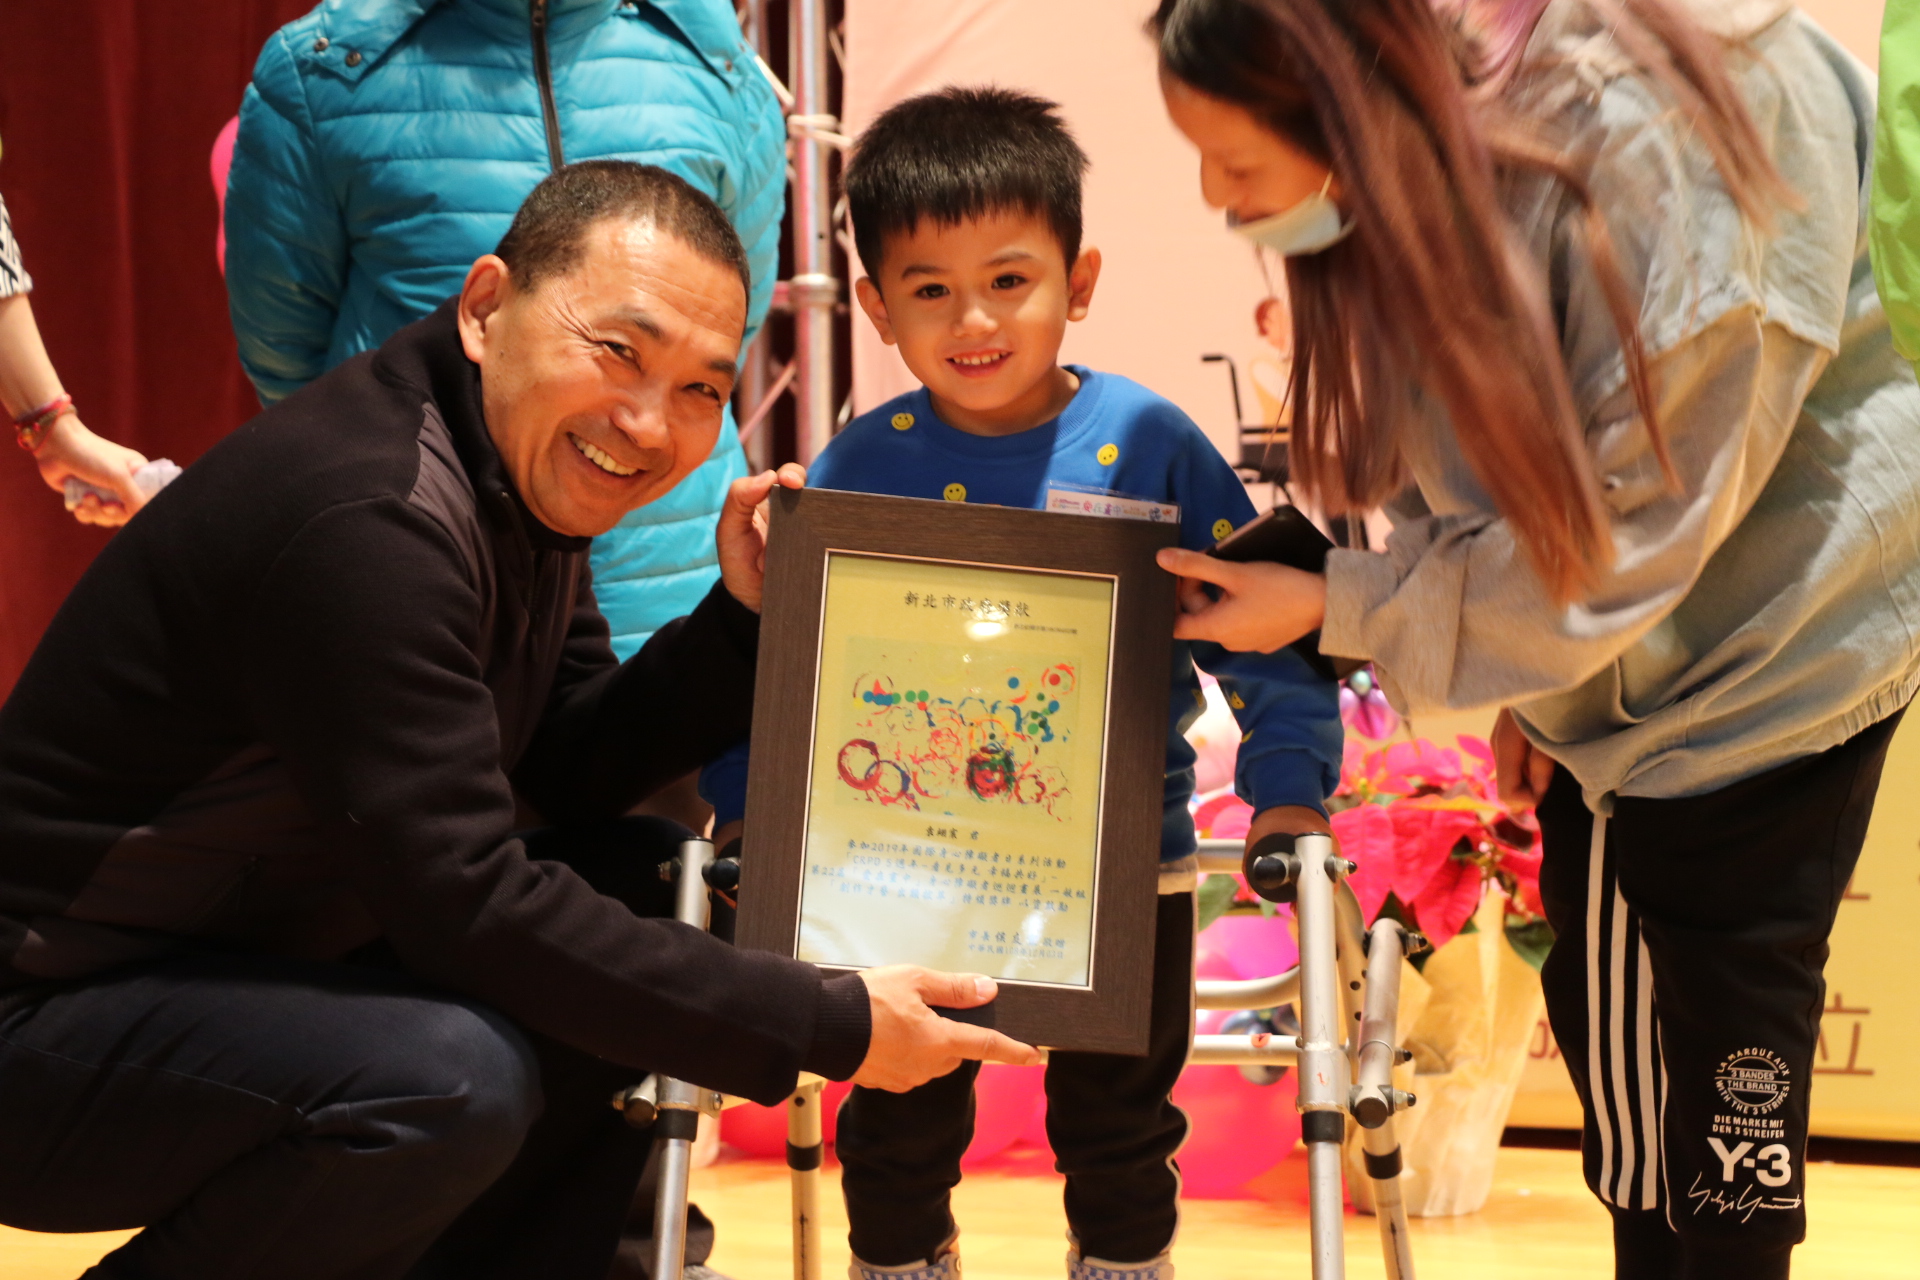 愛智發展中心的袁翊宸年僅4歲  是獲獎中年紀最小者